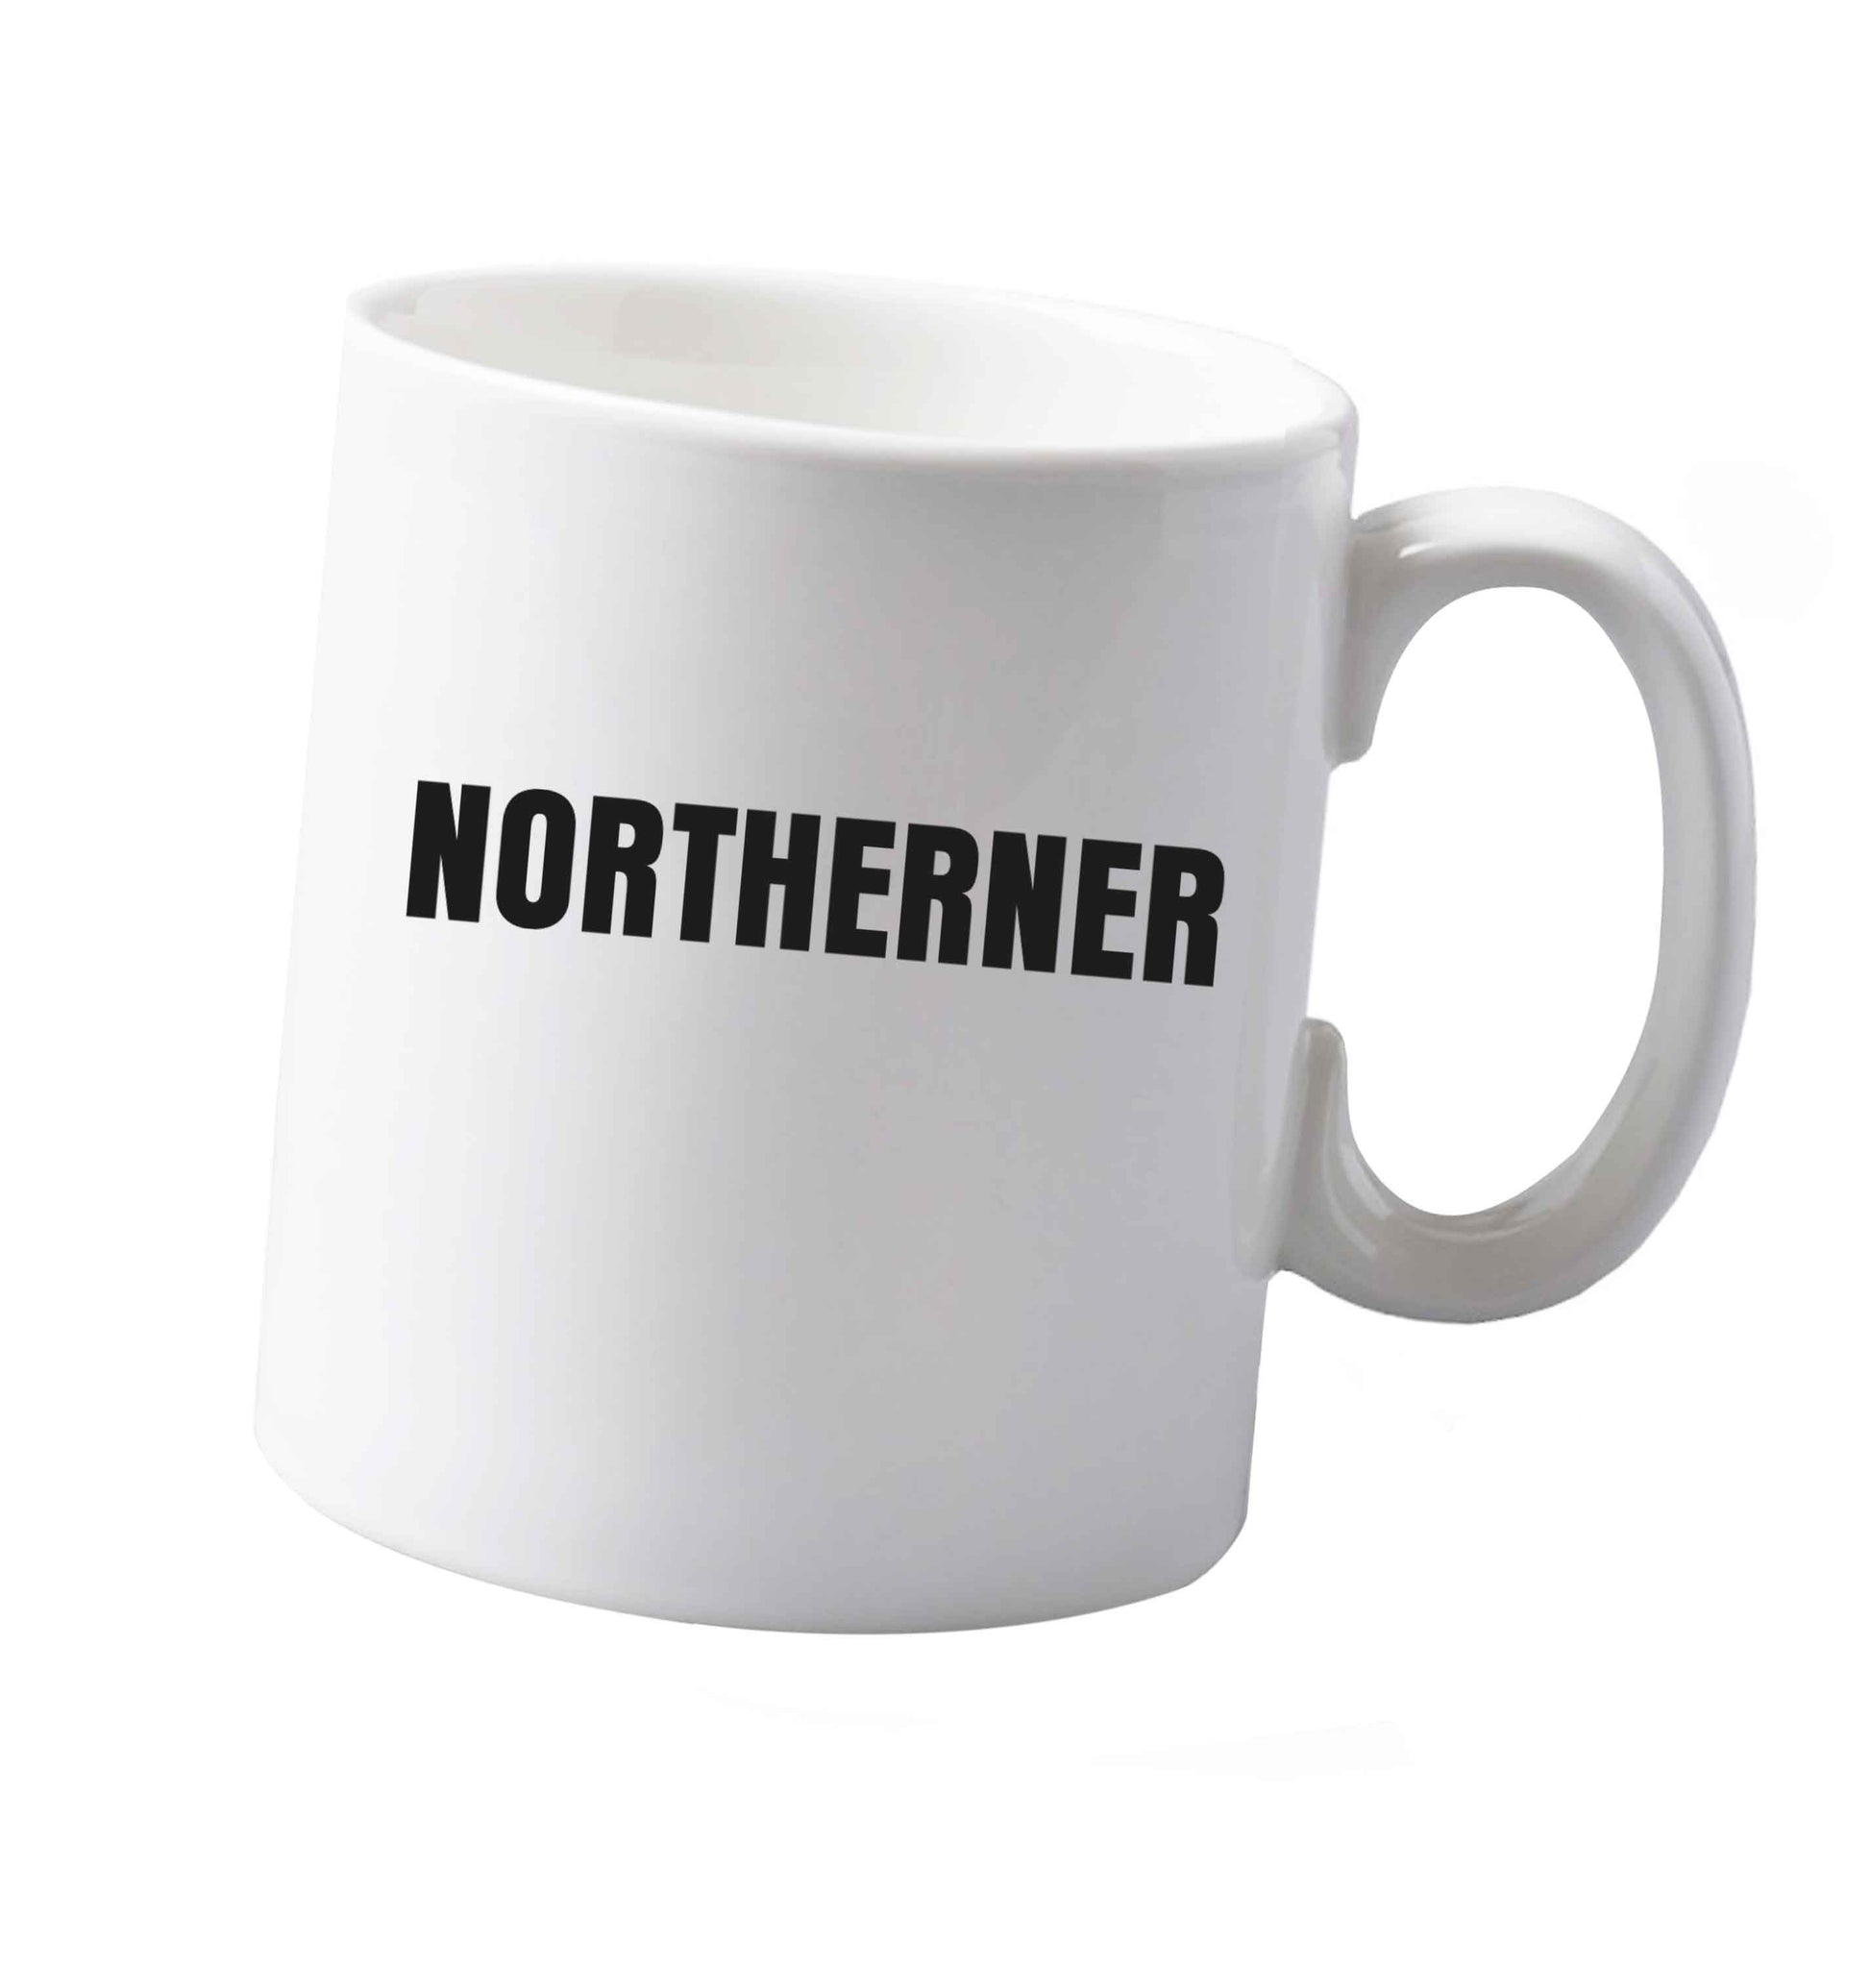 10 oz Northerner ceramic mug both sides